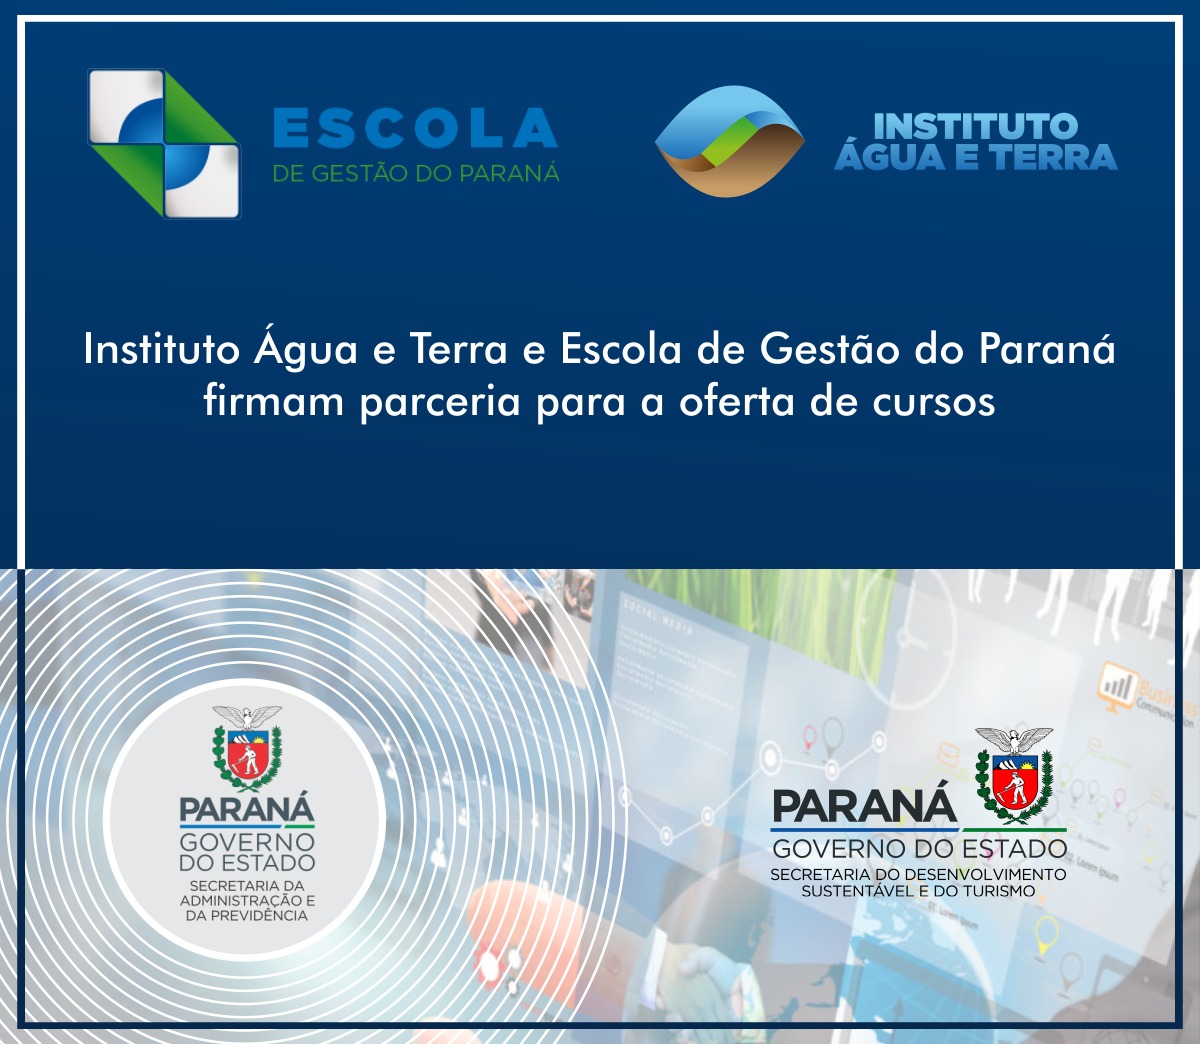 Uma parceria firmada entre o Instituto Água e Terra (IAT) e a Secretaria da Administração e da Previdência, por meio da Escola de Gestão do Paraná, vai ofertar cursos de capacitação na modalidade a distância 